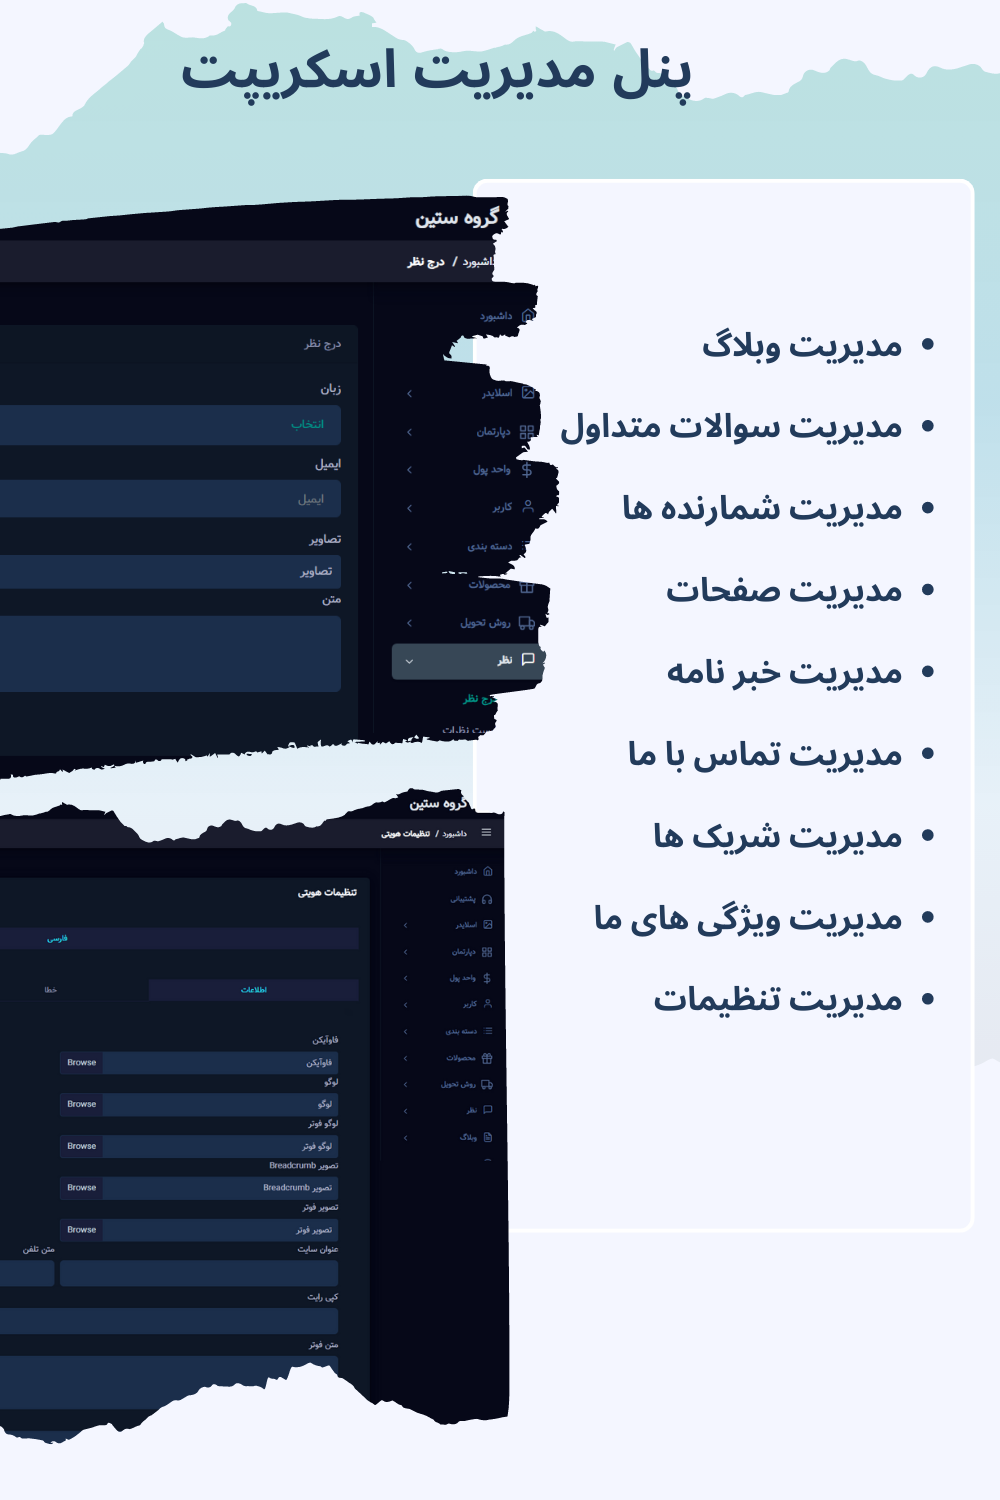 تنظیمات مختلف در پنل مدیریت اسکریپت حراجی بید اوت